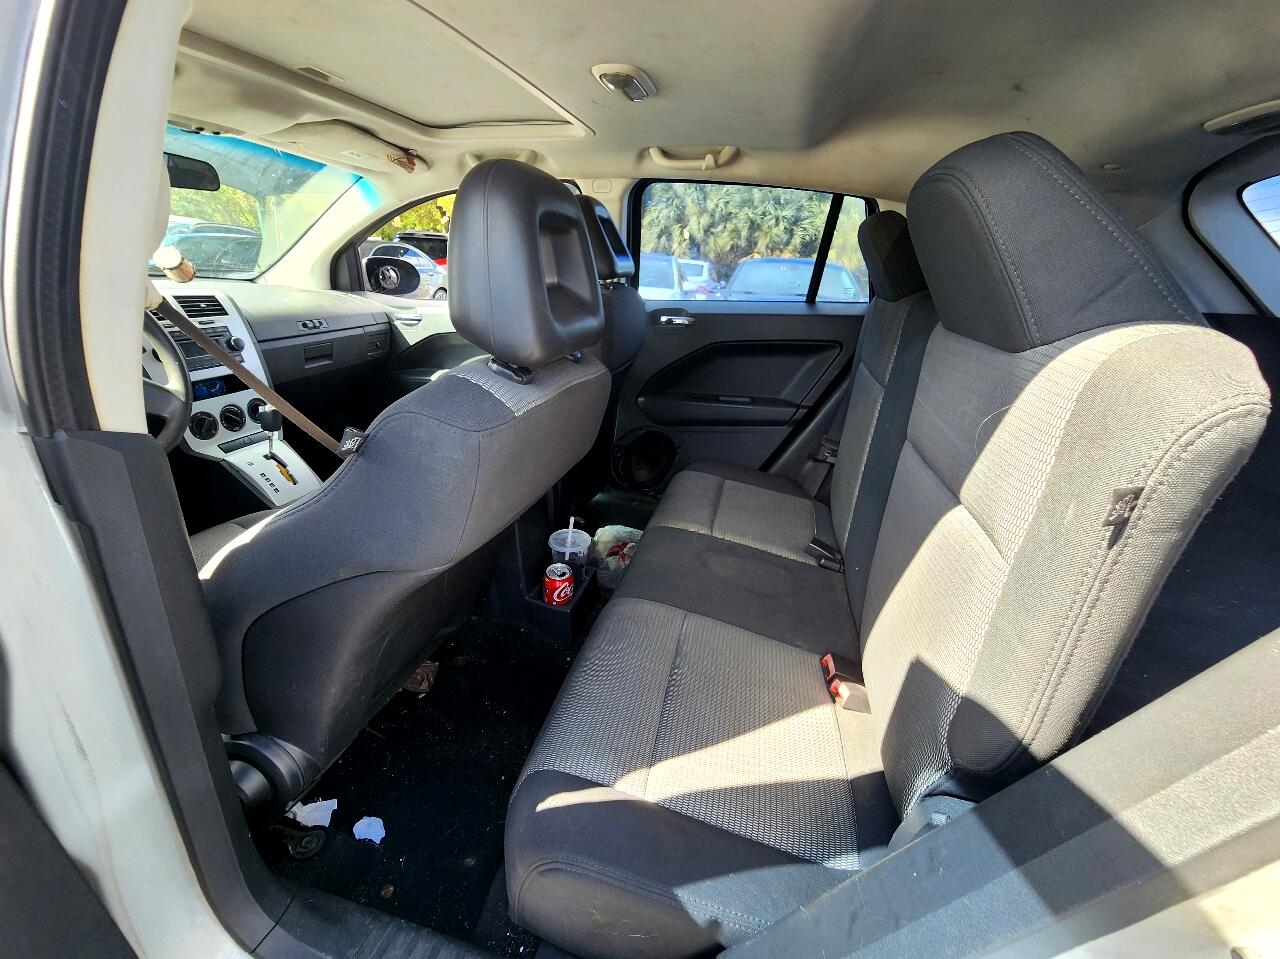 2008 DODGE Caliber Hatchback - $1,999